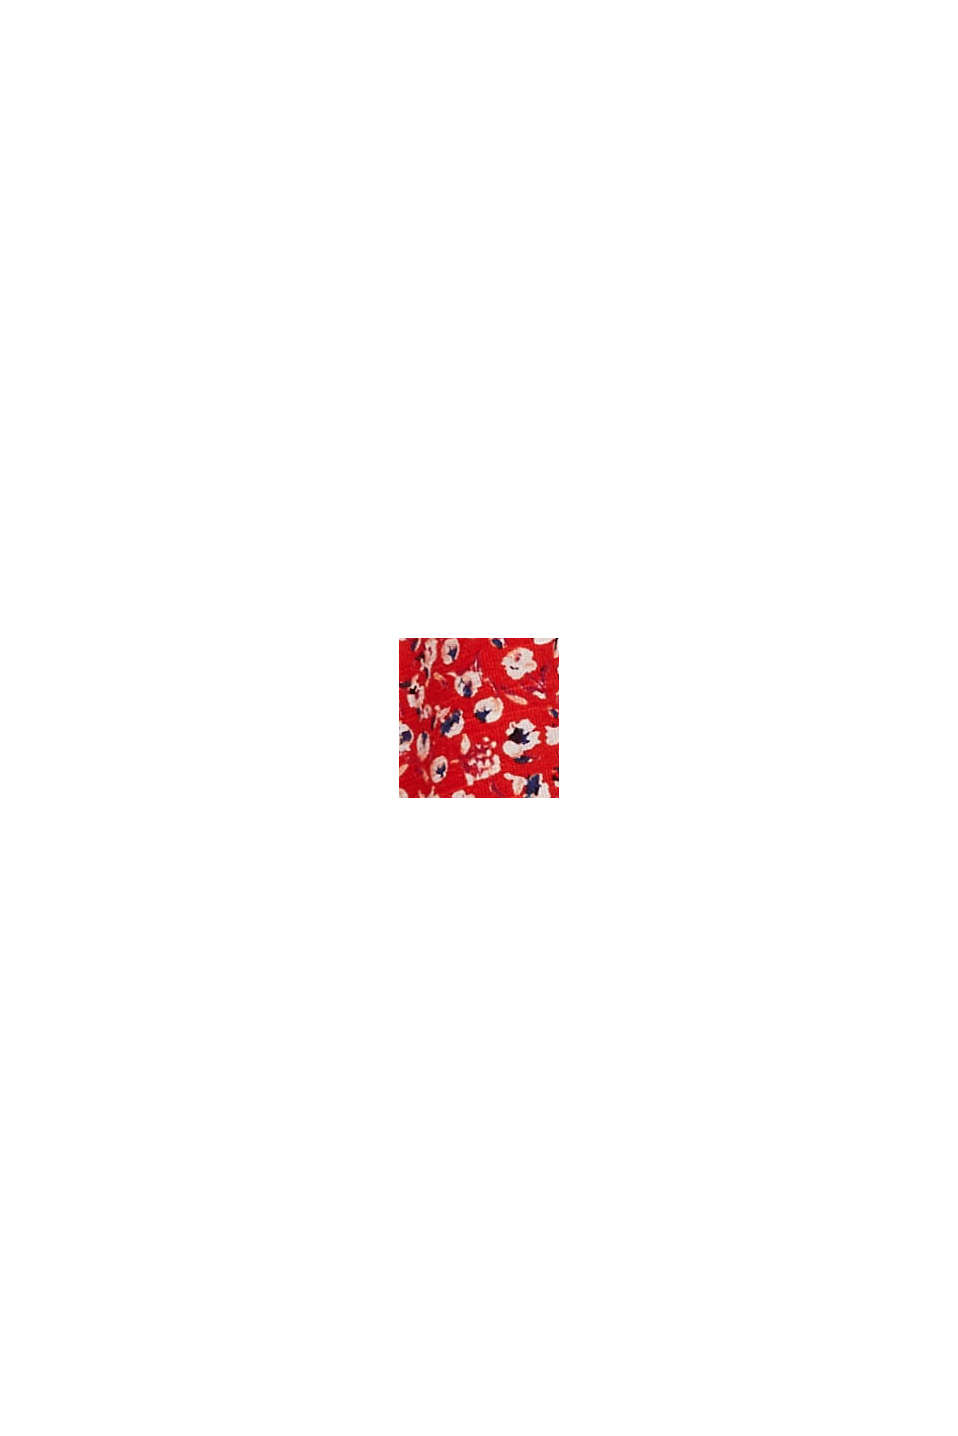 T-shirt à manches longues CURVY orné d’un motif mille-fleurs en coton biologique mélangé, RED, swatch